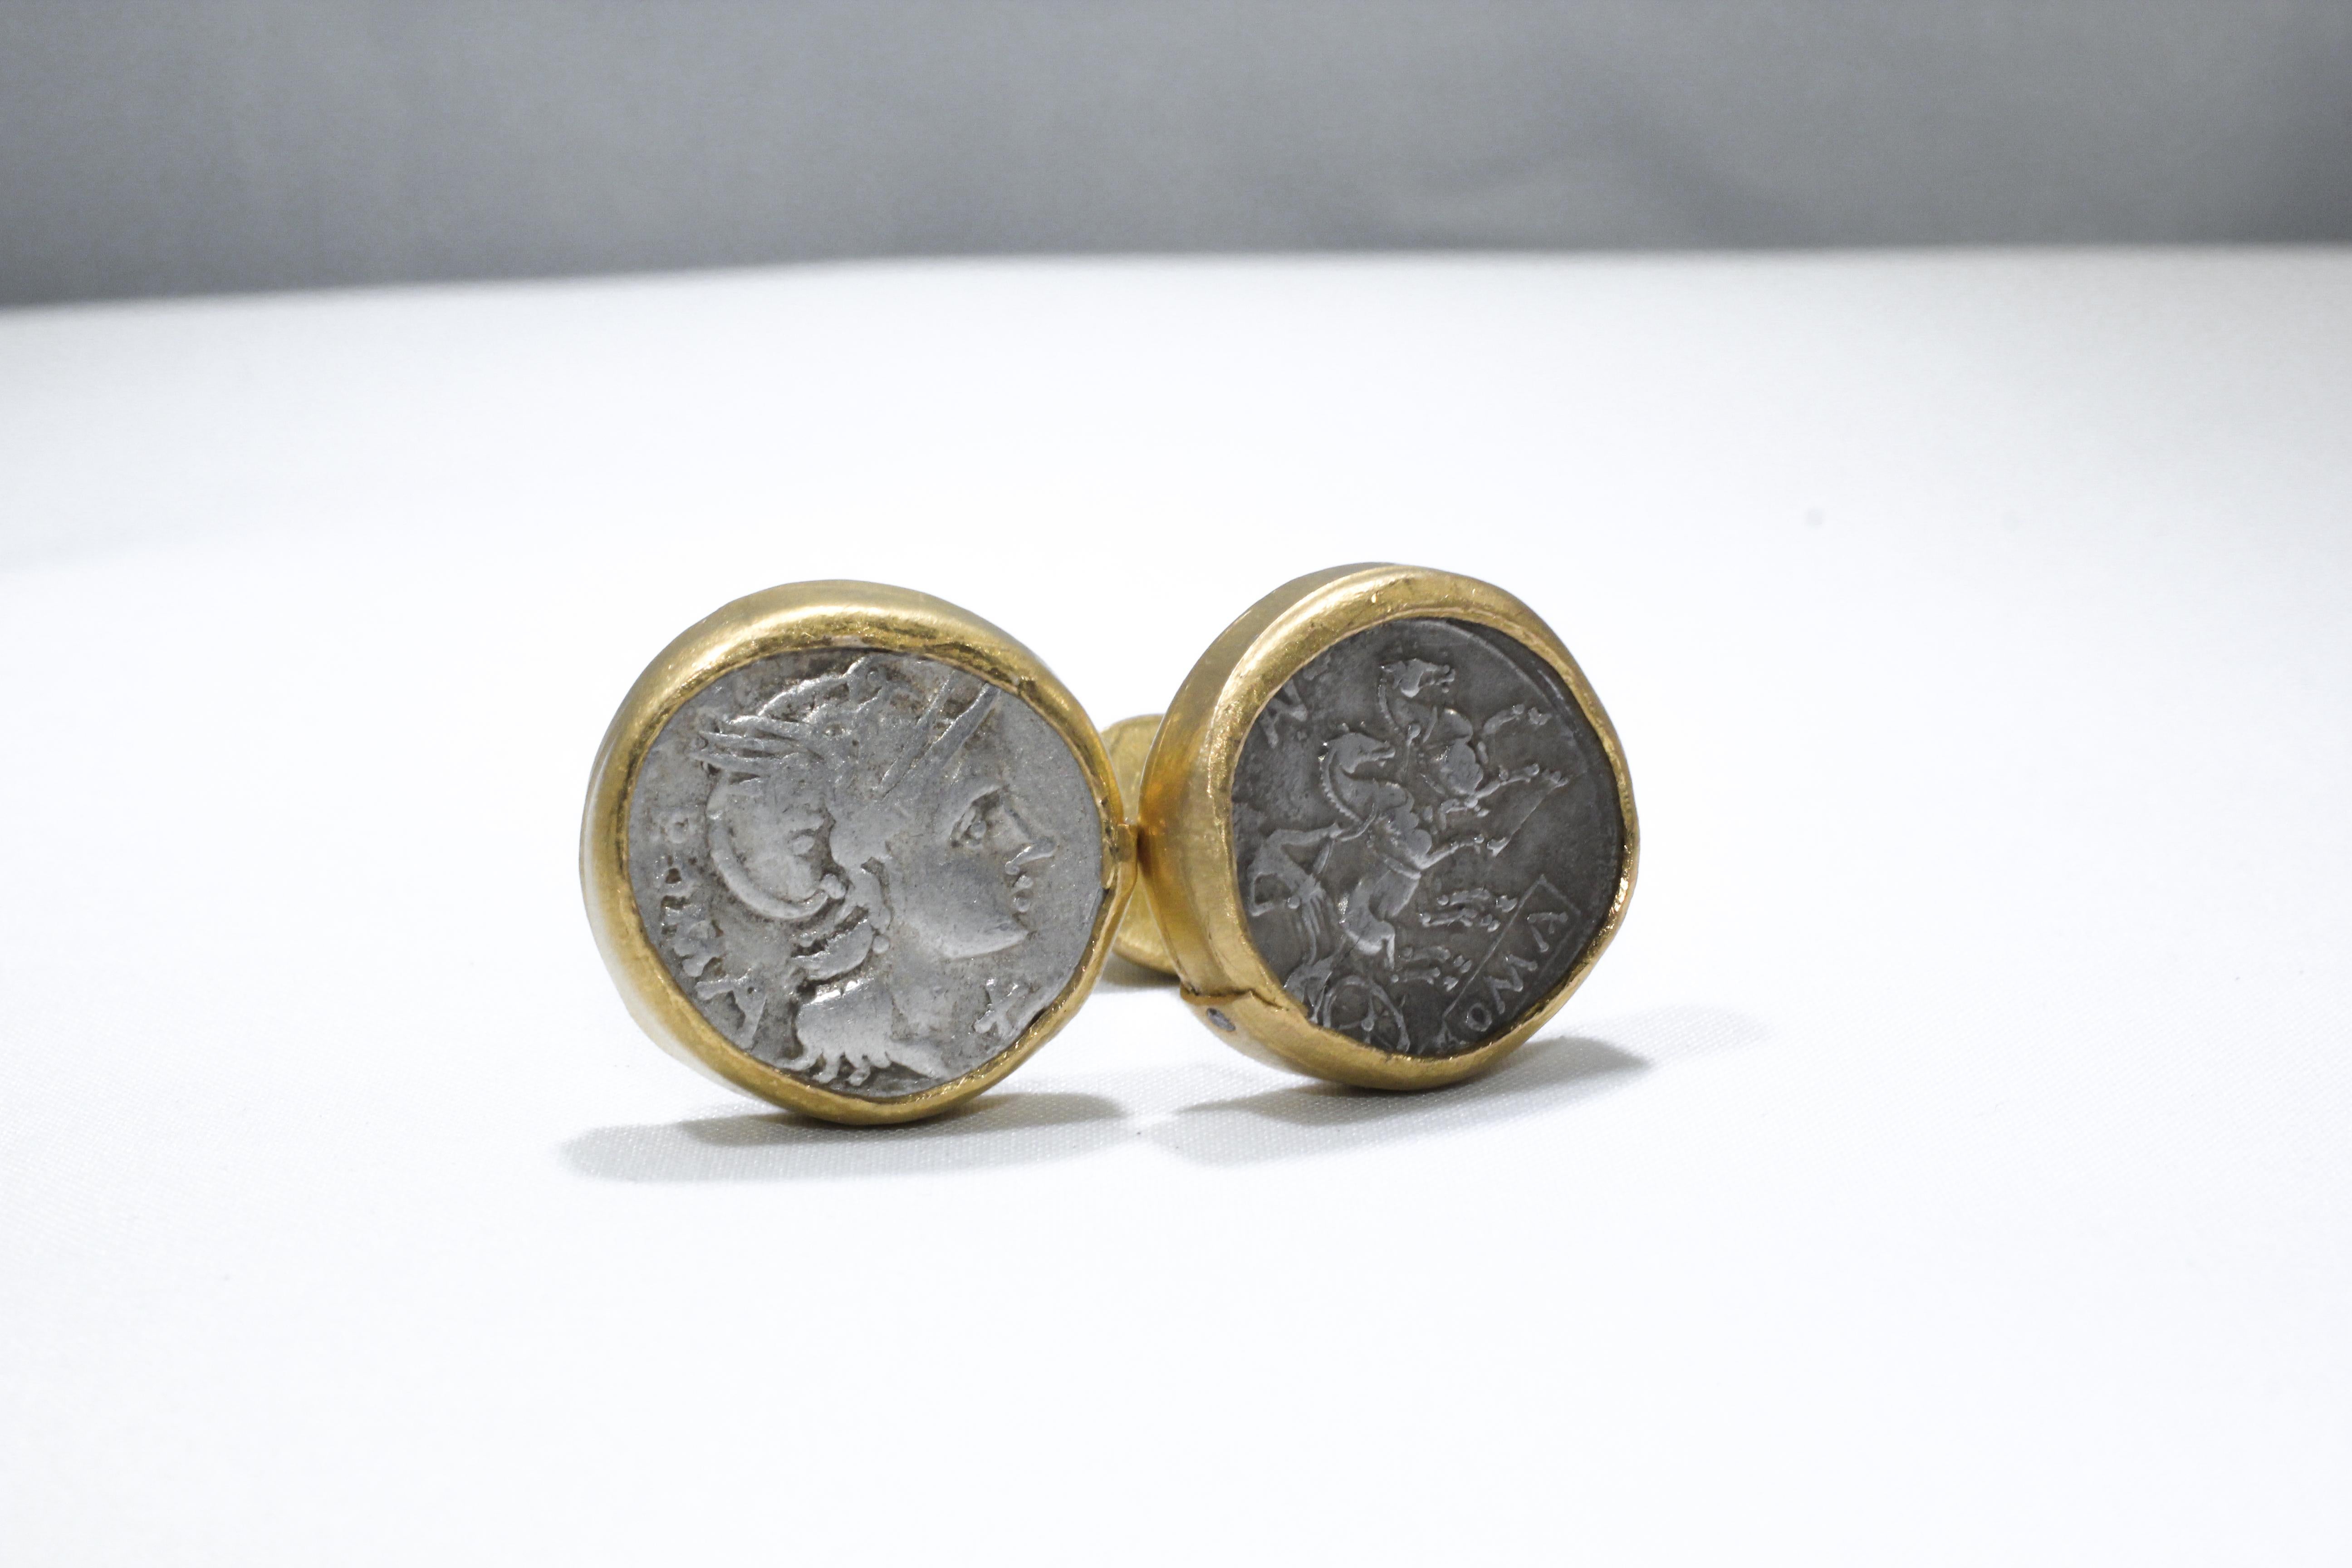 Manschettenknöpfe mit Münzen. Antike römische Münzen aus dem 2. Jh. v. Chr., eingefasst in 21-karätige Goldfassungen, mit kleinen Diamantakzenten. Zeitgenössisches Schmuckdesign von AB Jewelry NYC.

Diese kühnen und maskulinen Manschettenknöpfe, die